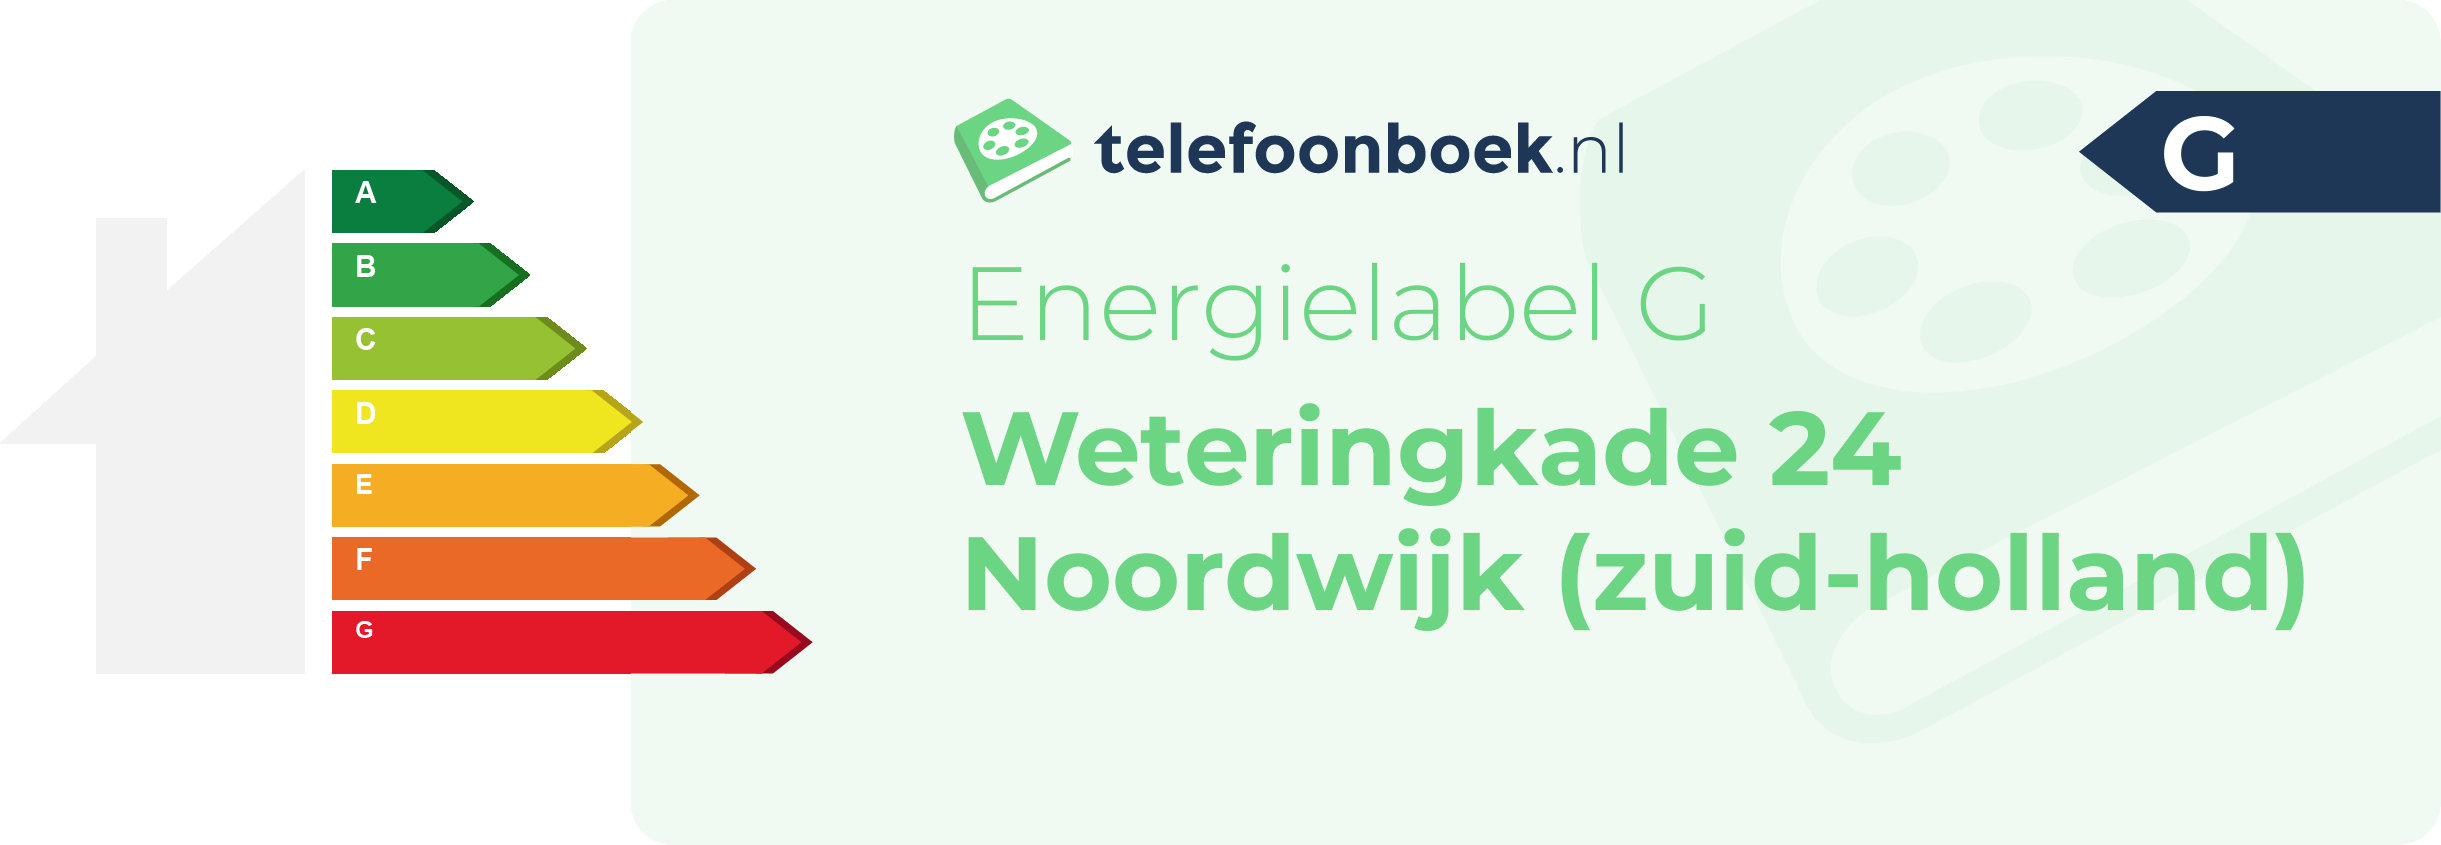 Energielabel Weteringkade 24 Noordwijk (Zuid-Holland)